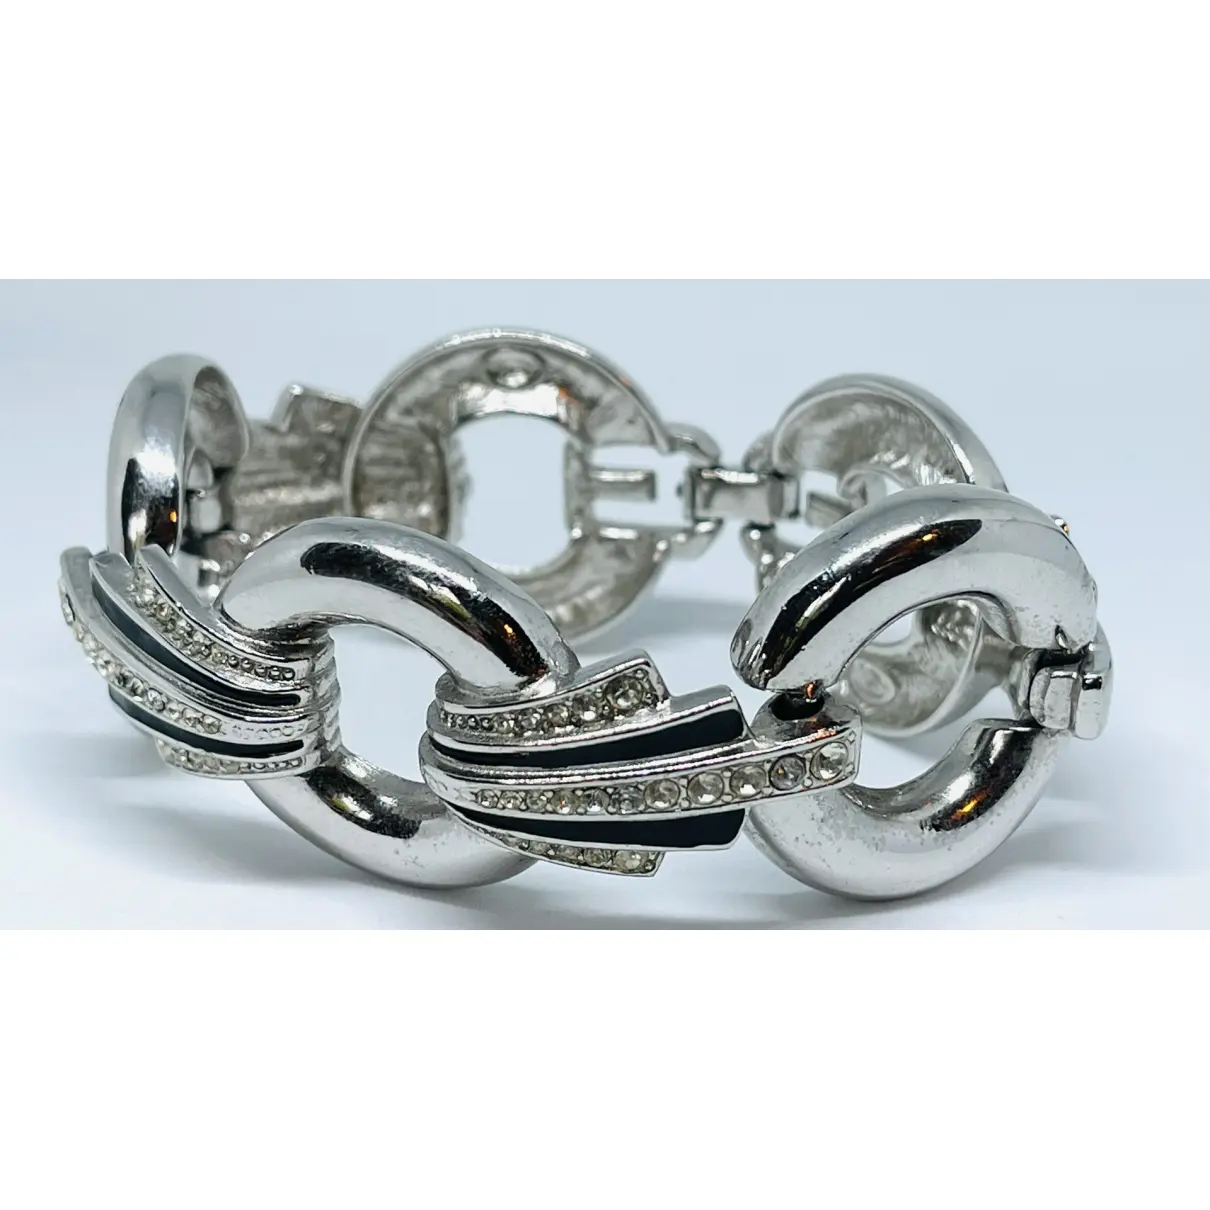 Buy Givenchy Bracelet online - Vintage